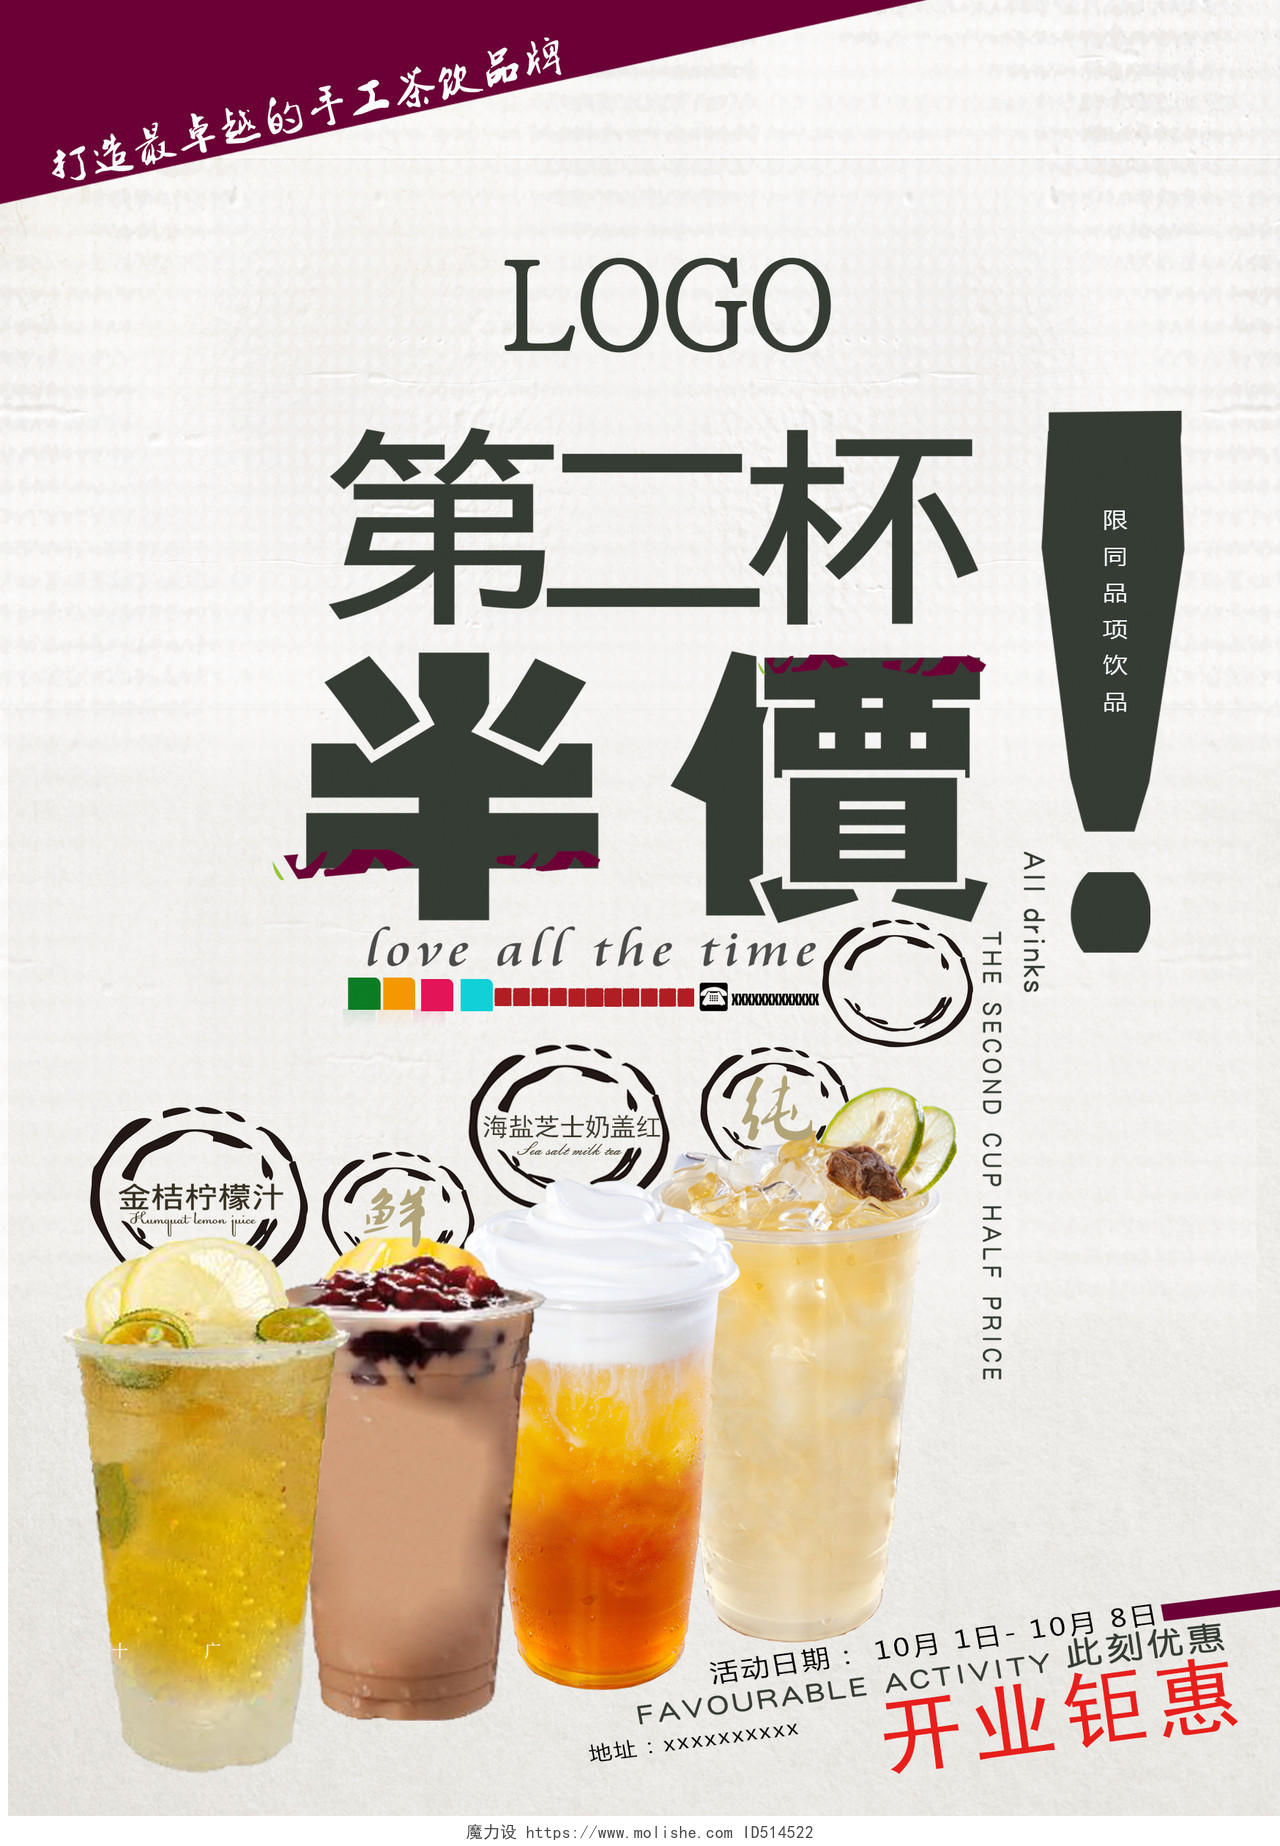 简约小清新风格果饮店奶茶店开业优惠促销海报